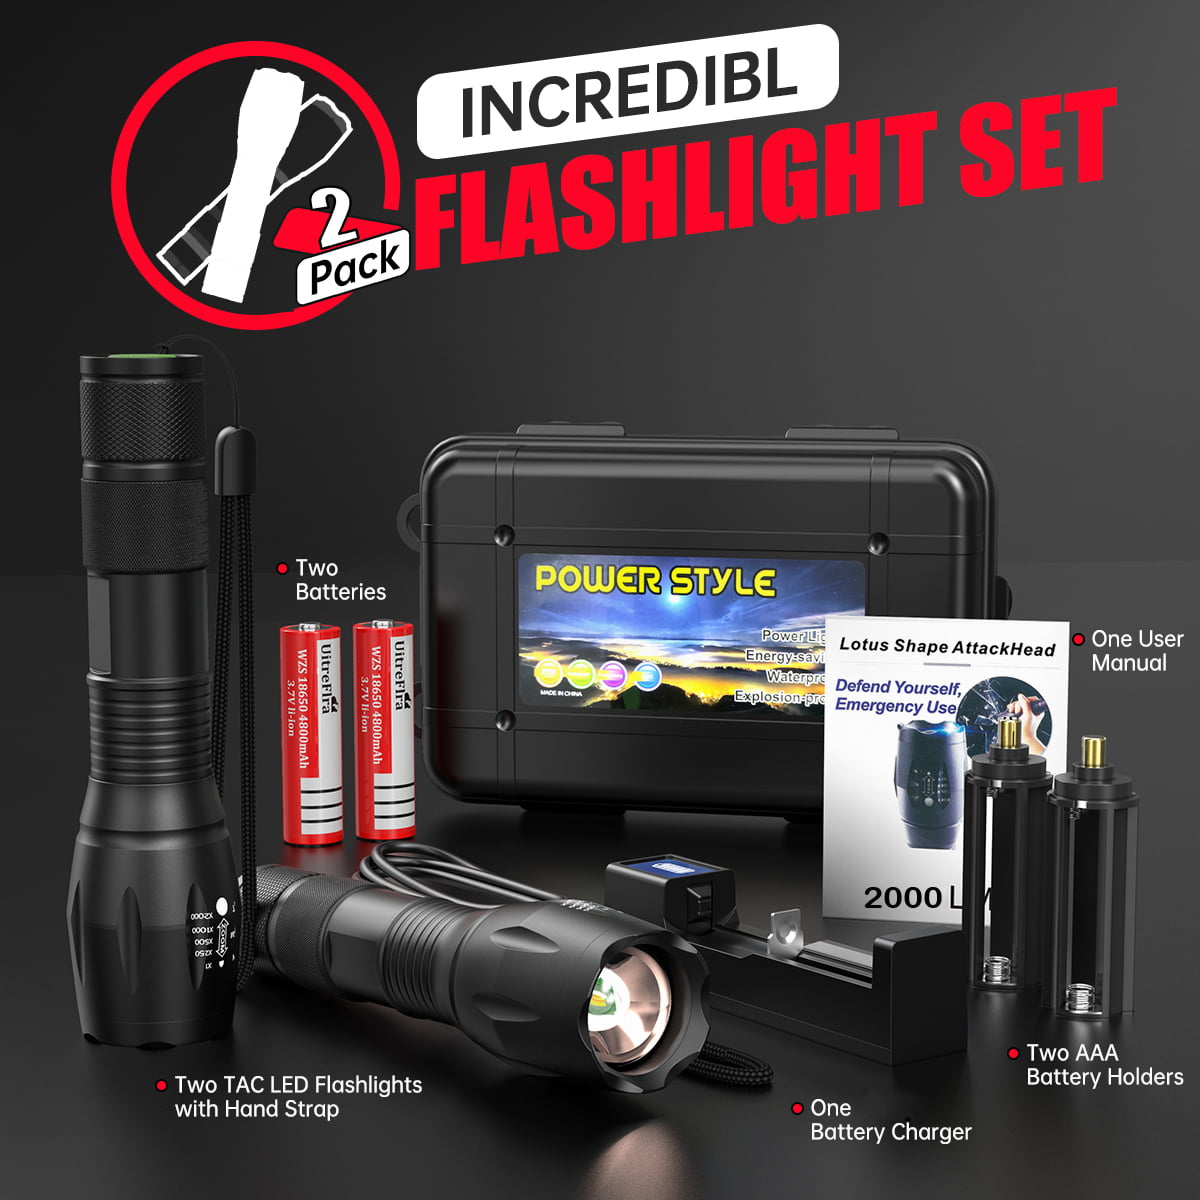 Amuoc LED 2000 Lumens Flashlights – HardGrizzly